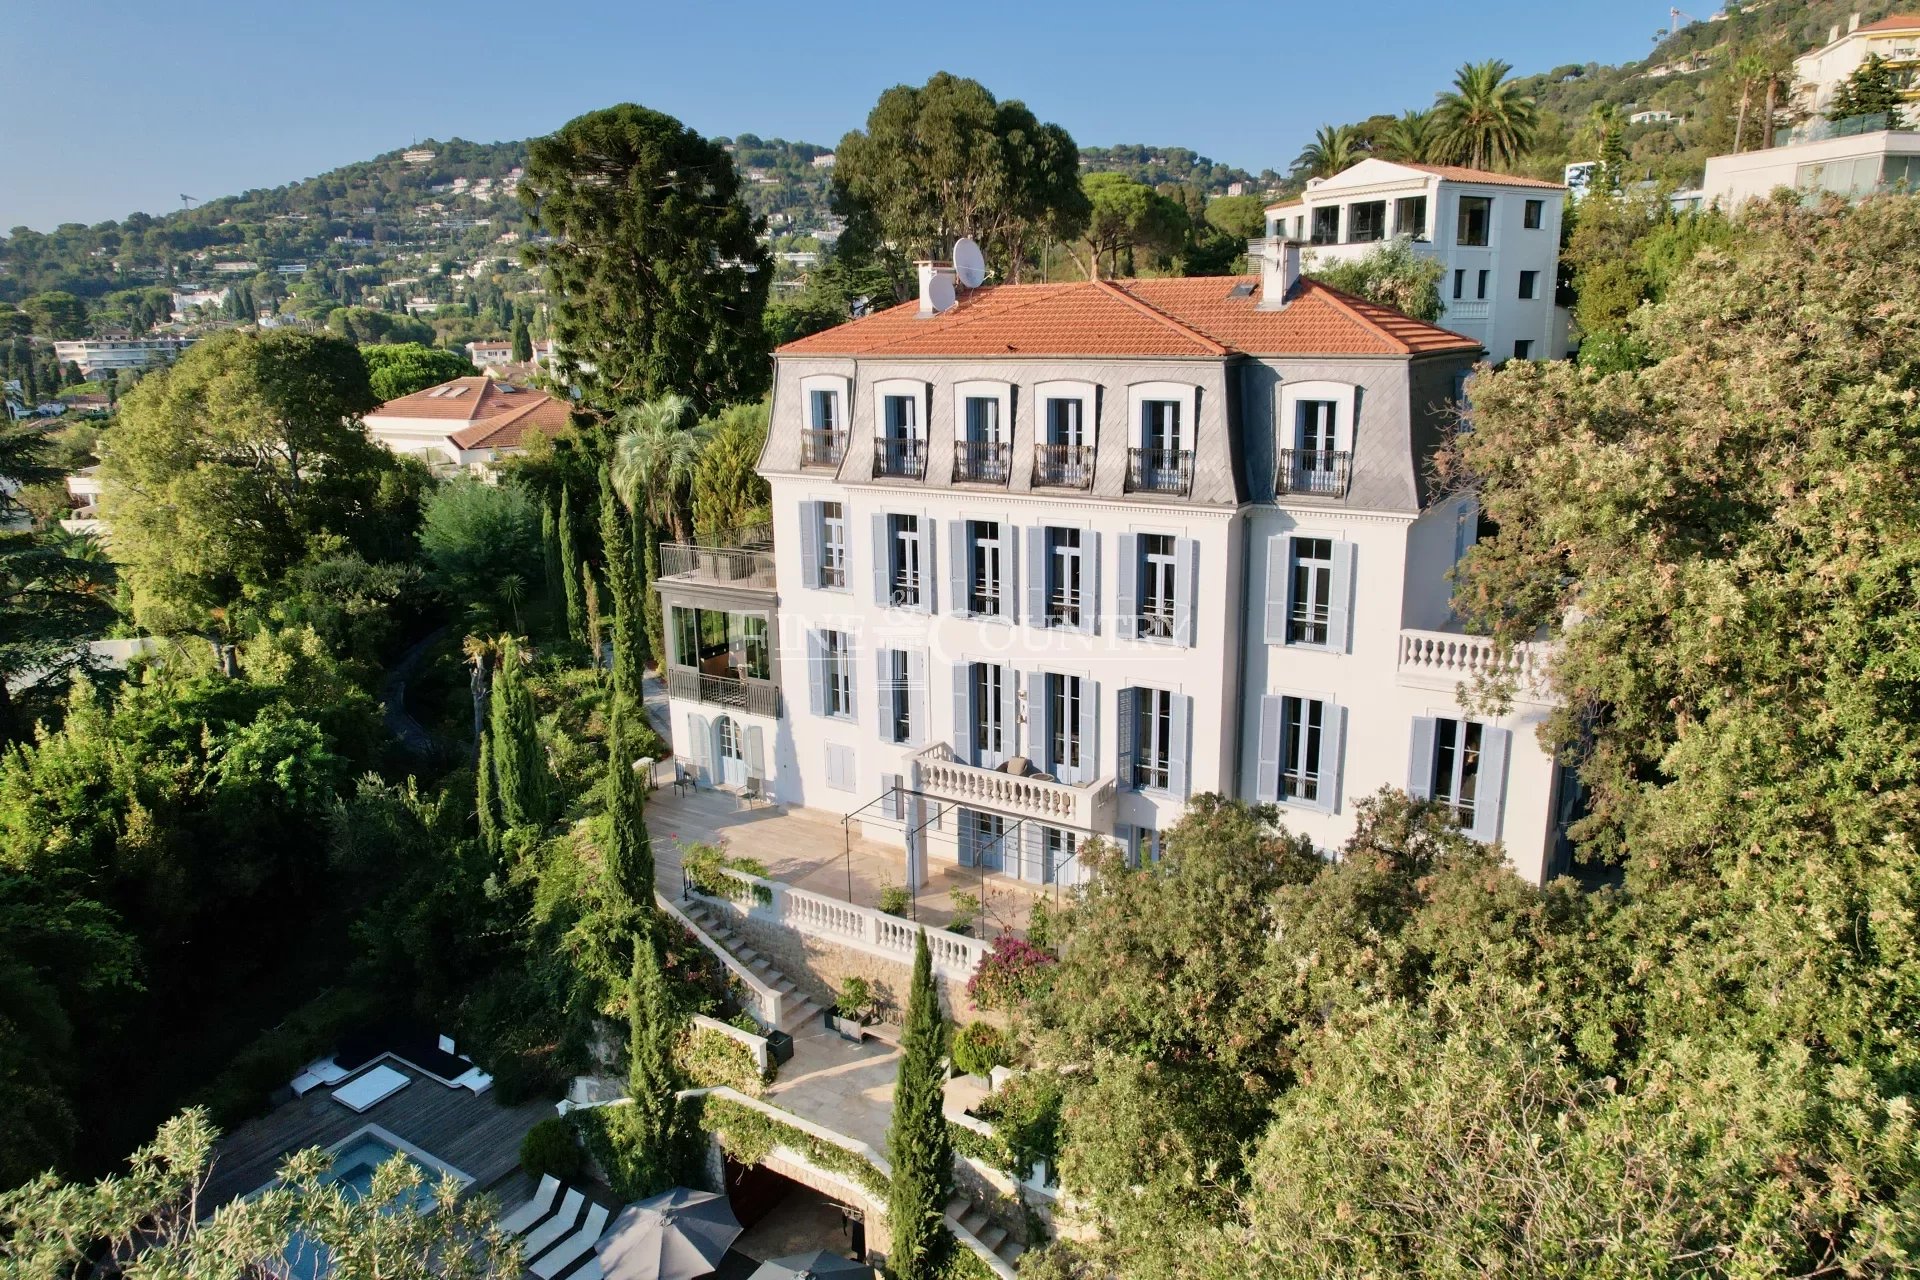 Vente Villa Belle Epoque Cannes avec Vue Mer